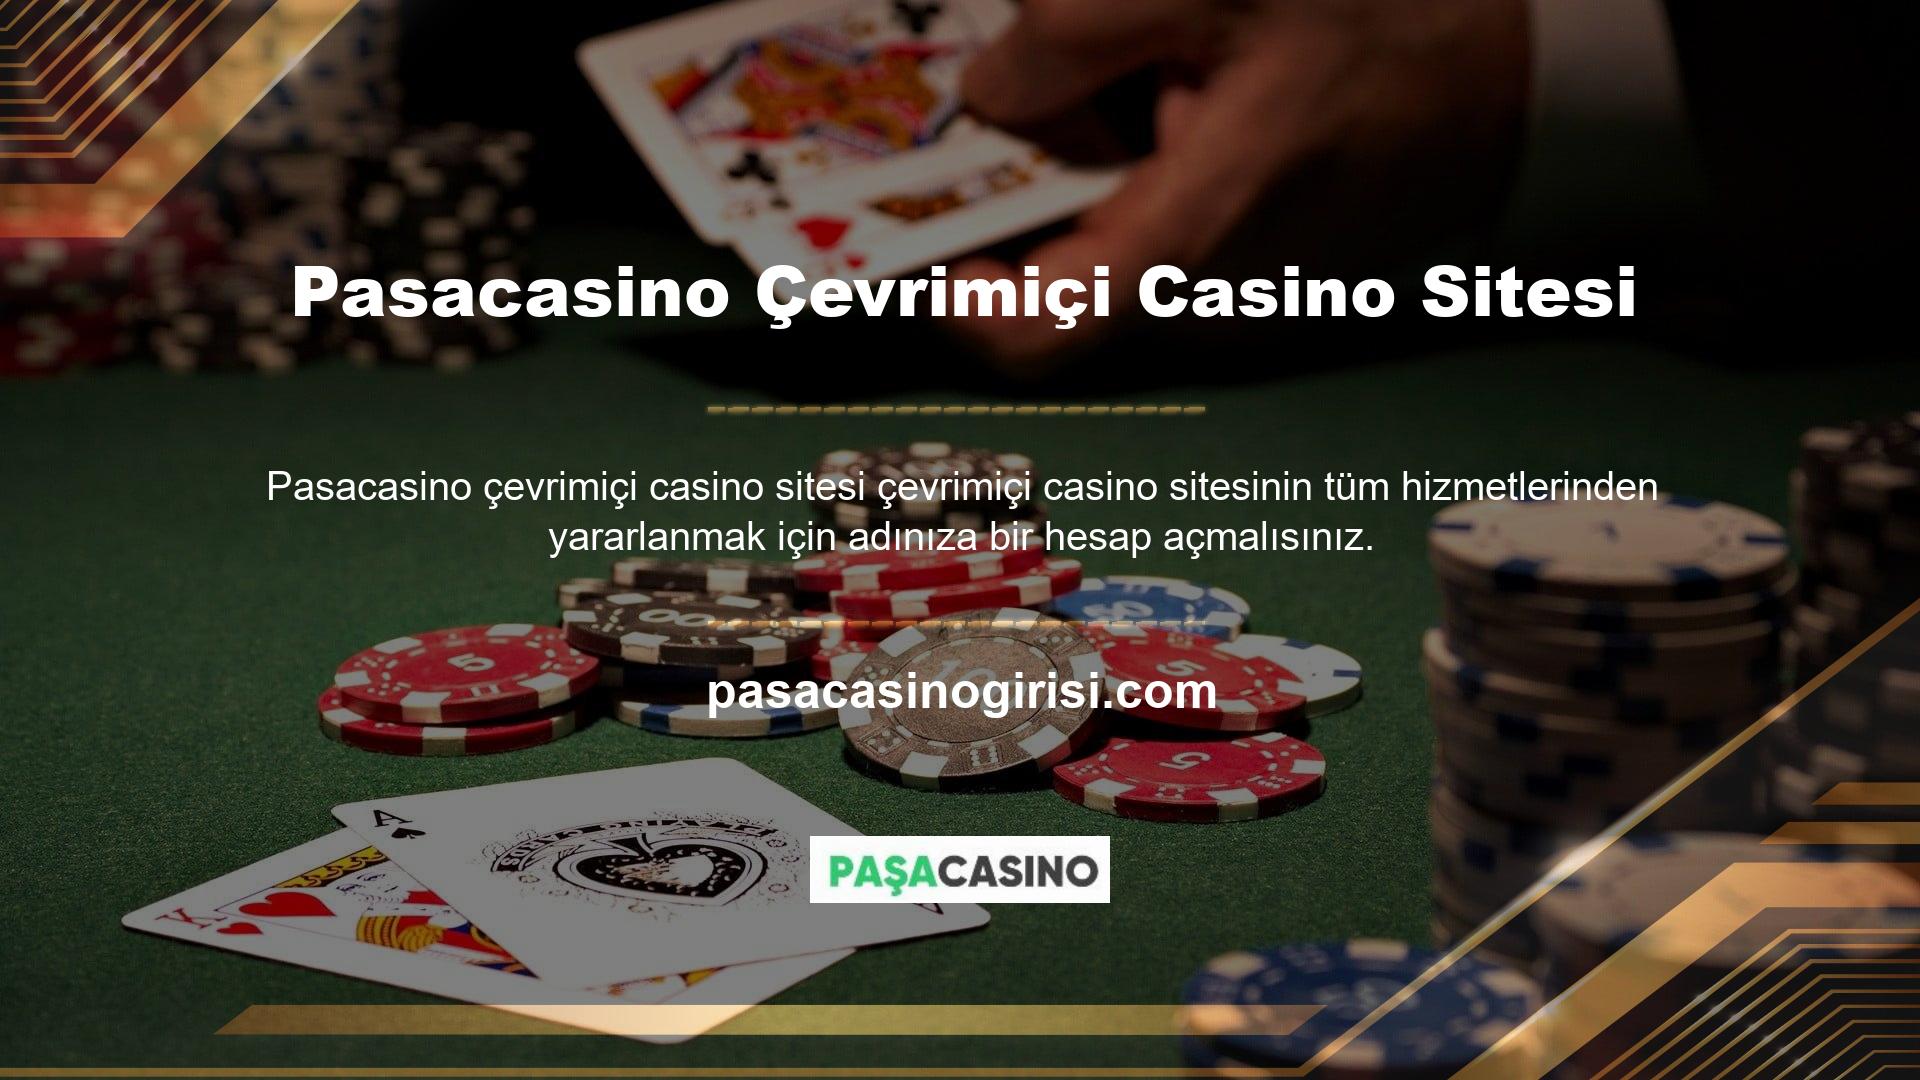 Canlı bahis, canlı casino, spor bahisleri, sanal bahis ve canlı bingo teklifleri dahil olmak üzere üyelerimize birçok hizmet kategorisi sunuyoruz ve onlarca farklı slot makinesi oyunu